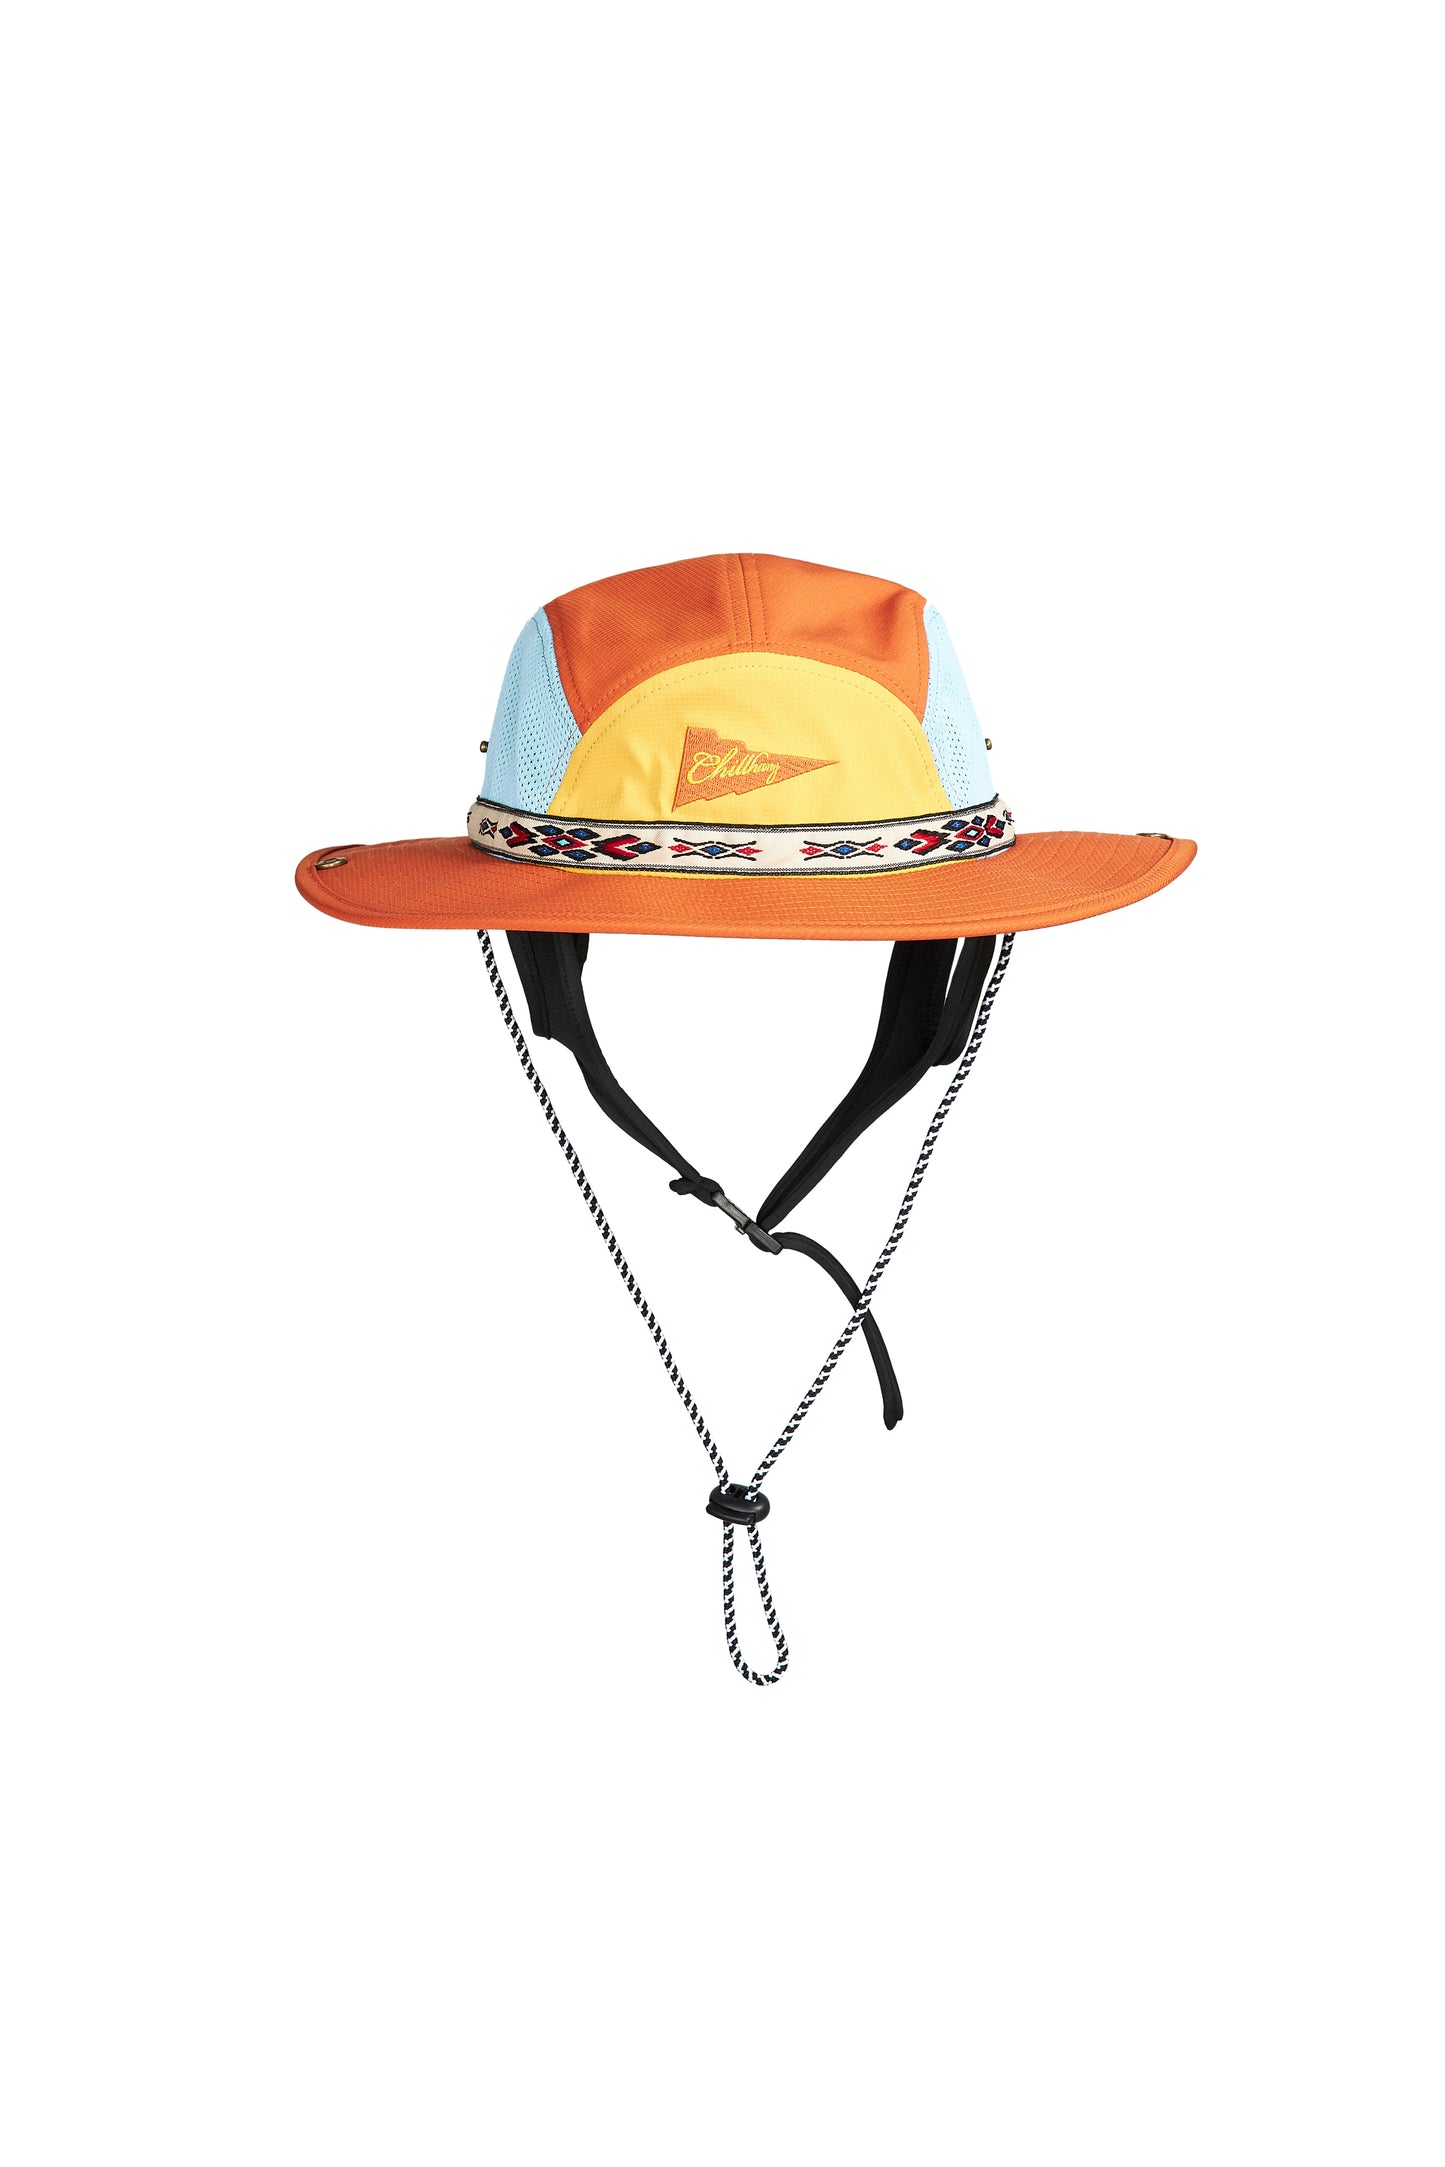 CHILLHANG 民族衝浪漁夫帽(藍 x 橙)